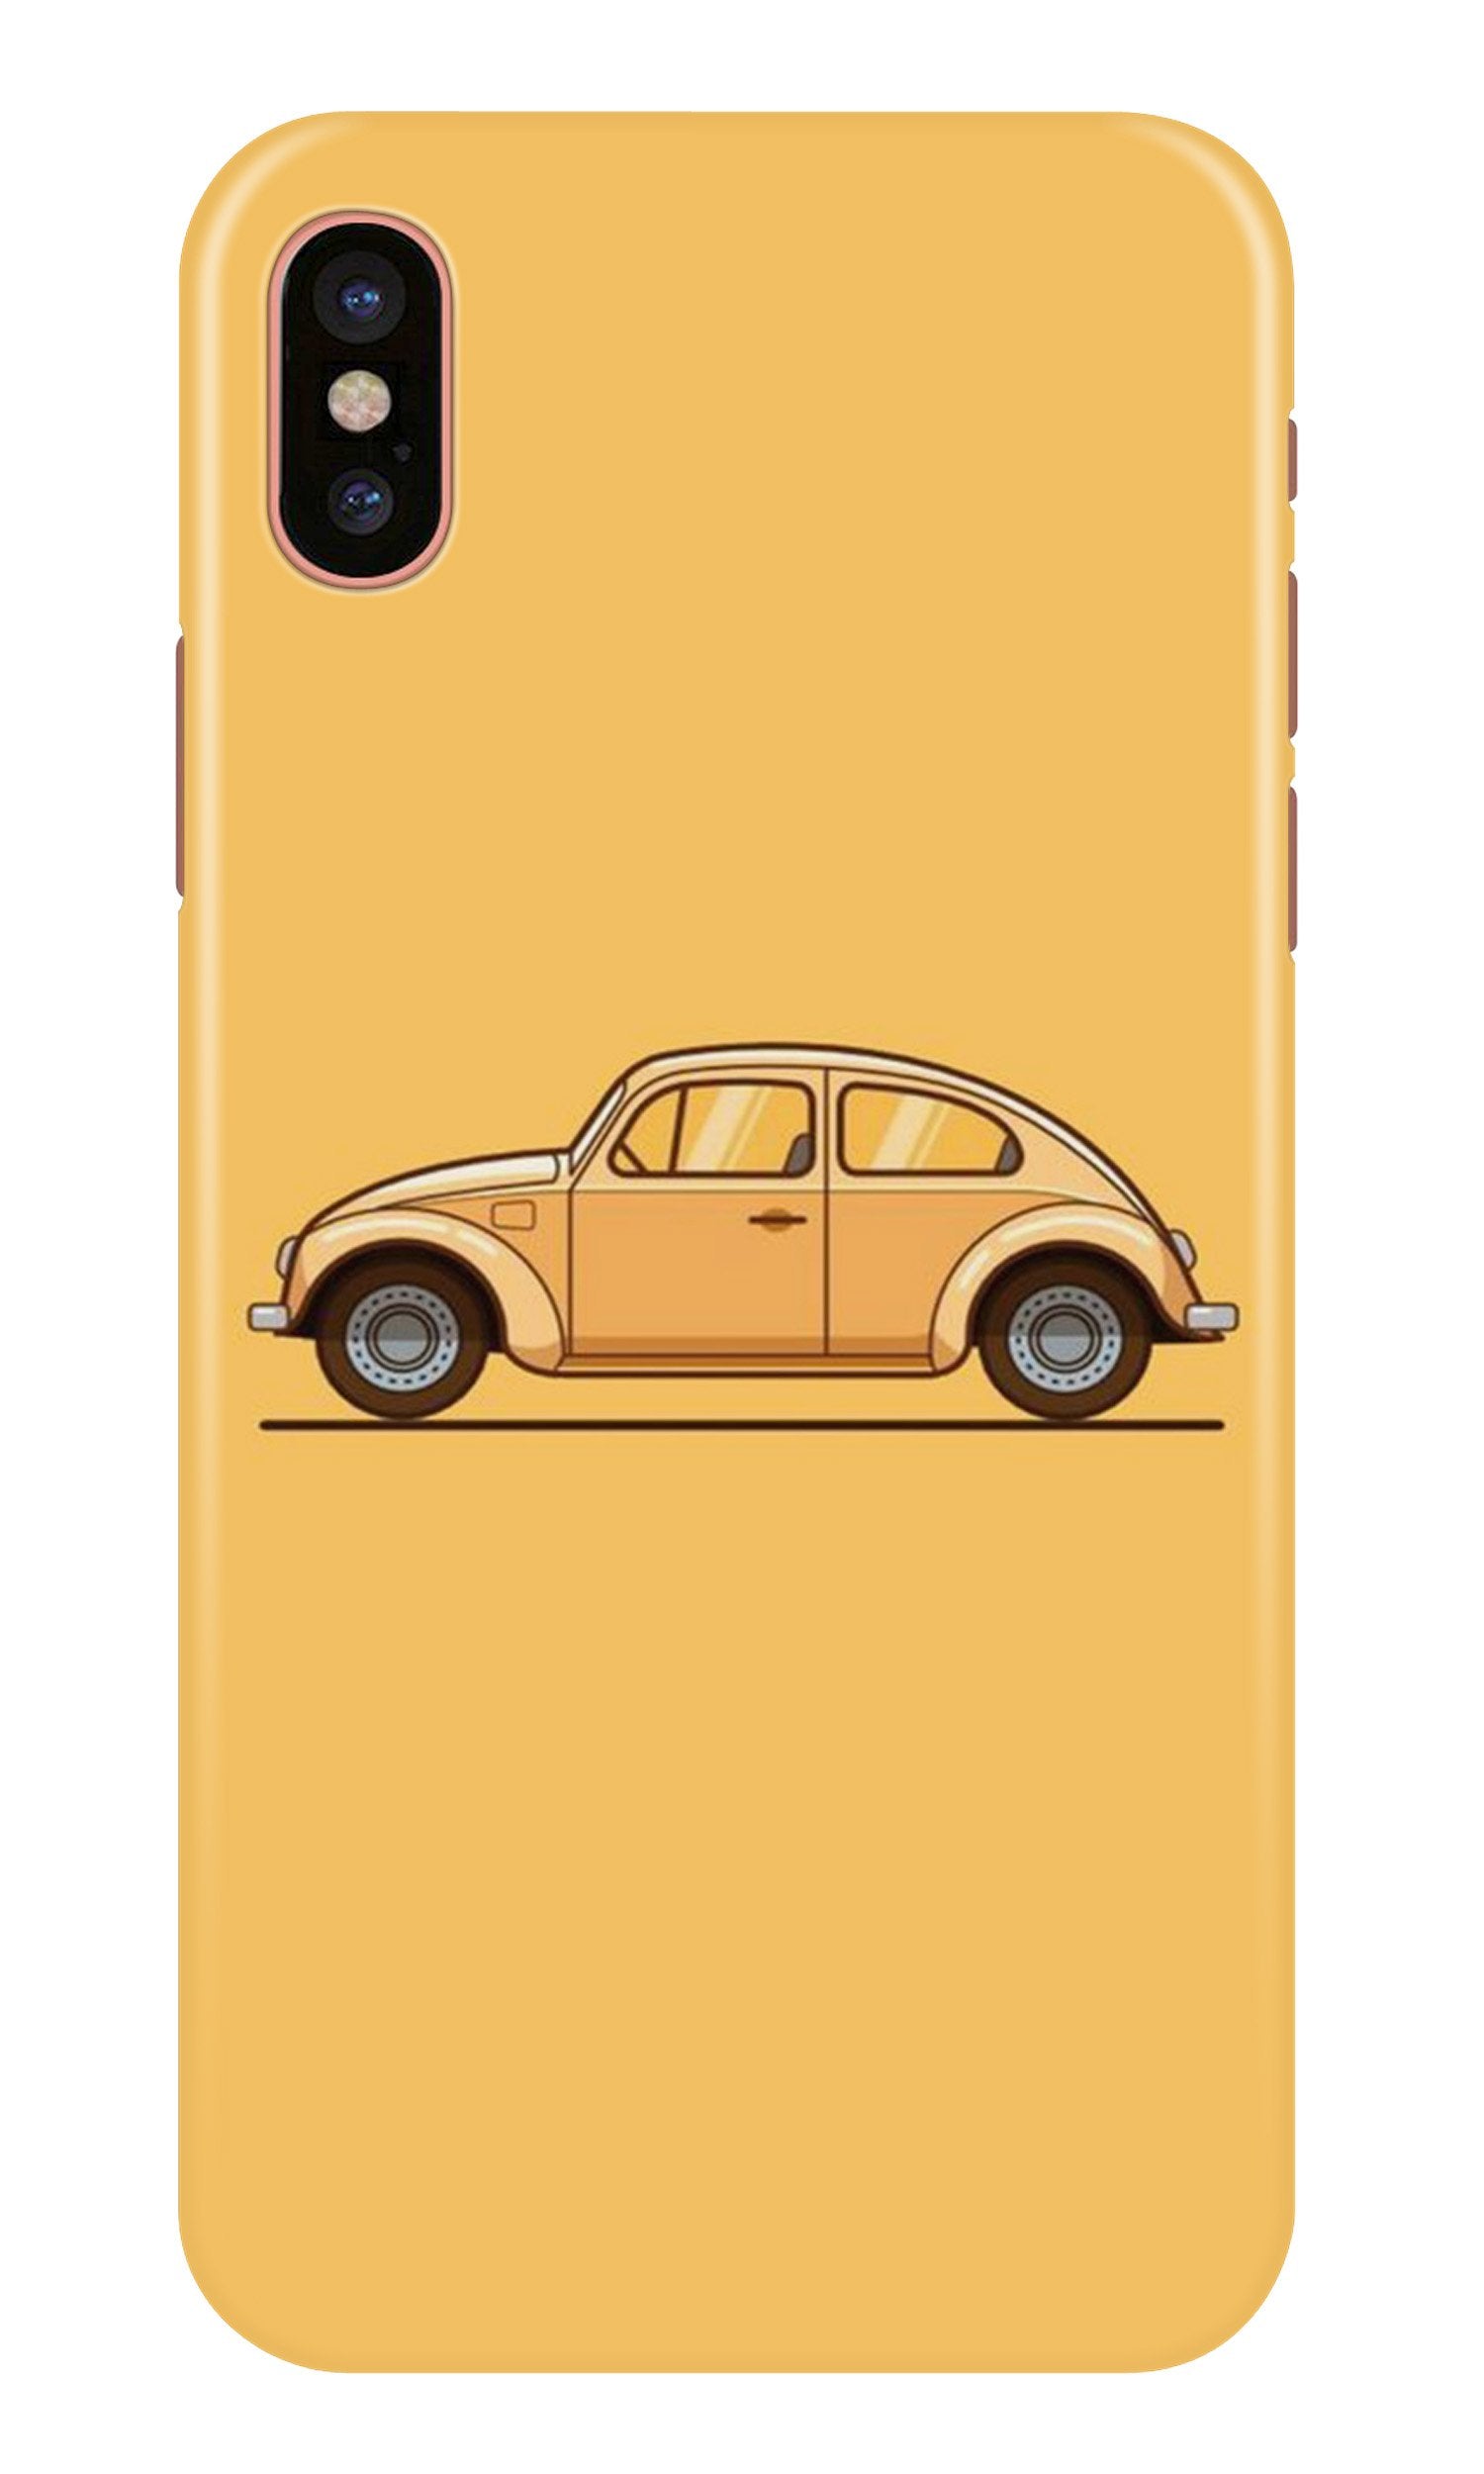 Vintage Car Case for iPhone Xr (Design No. 262)